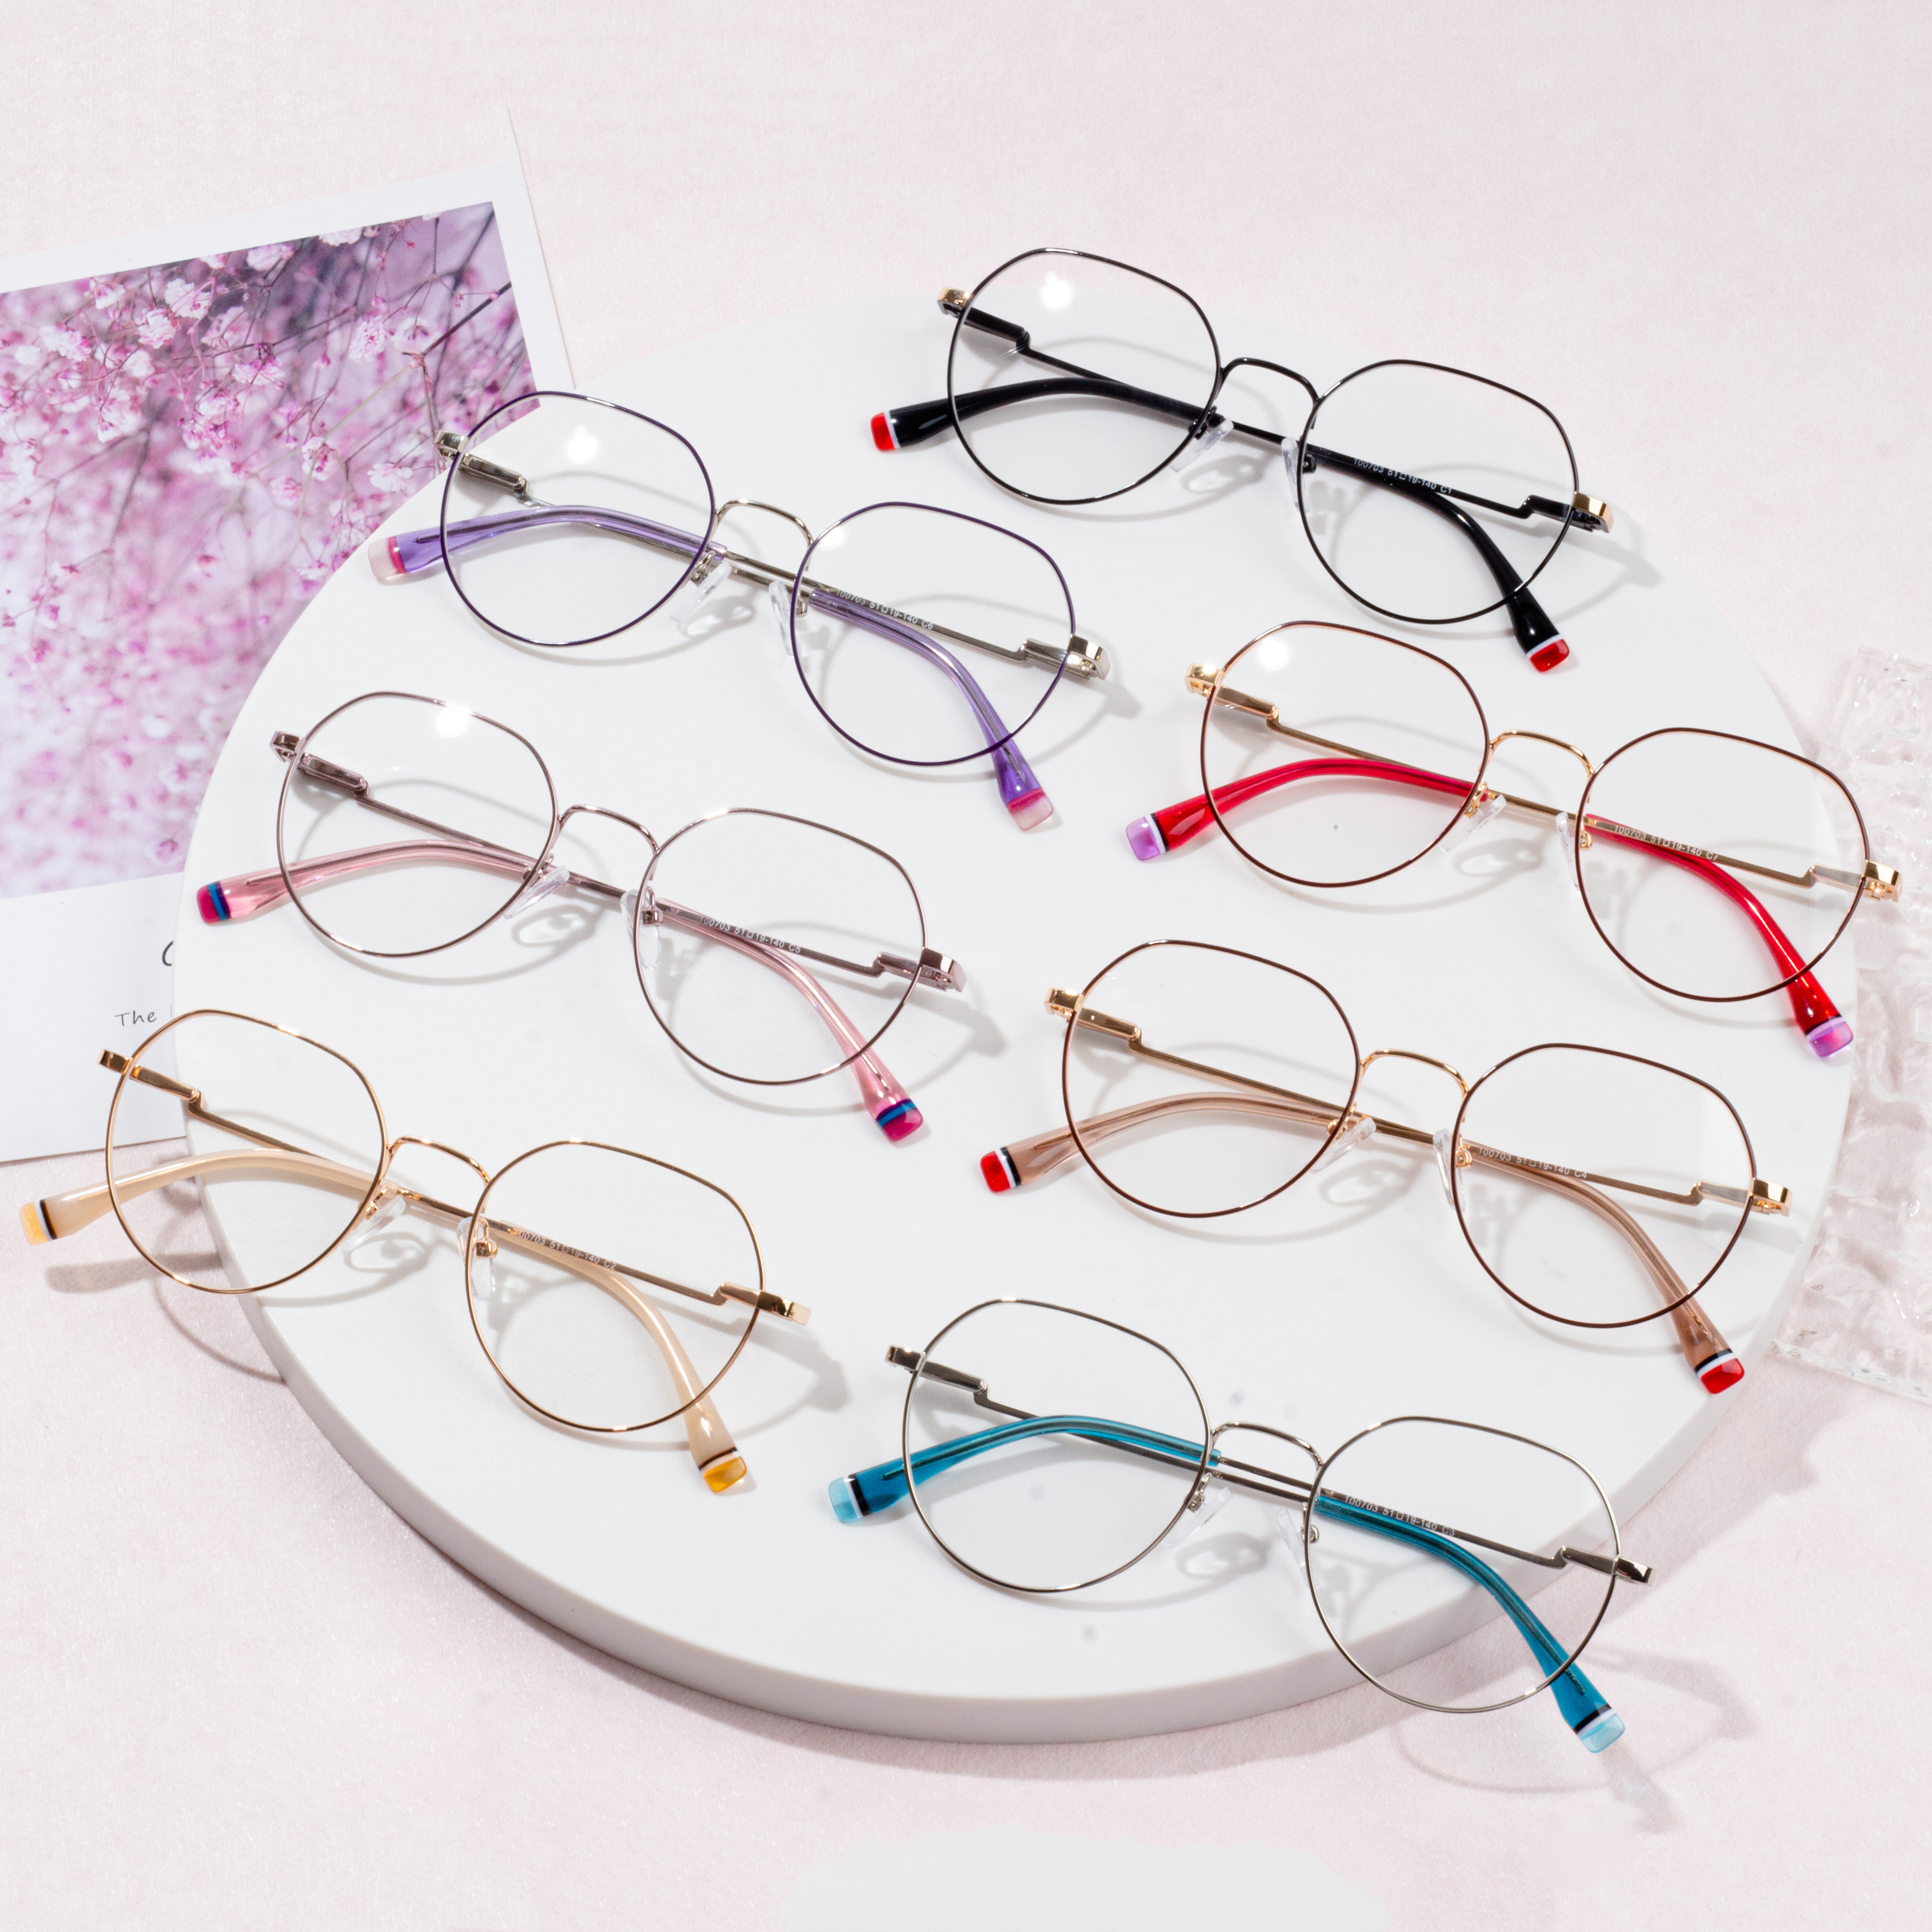 bingkai kacamata paling populer